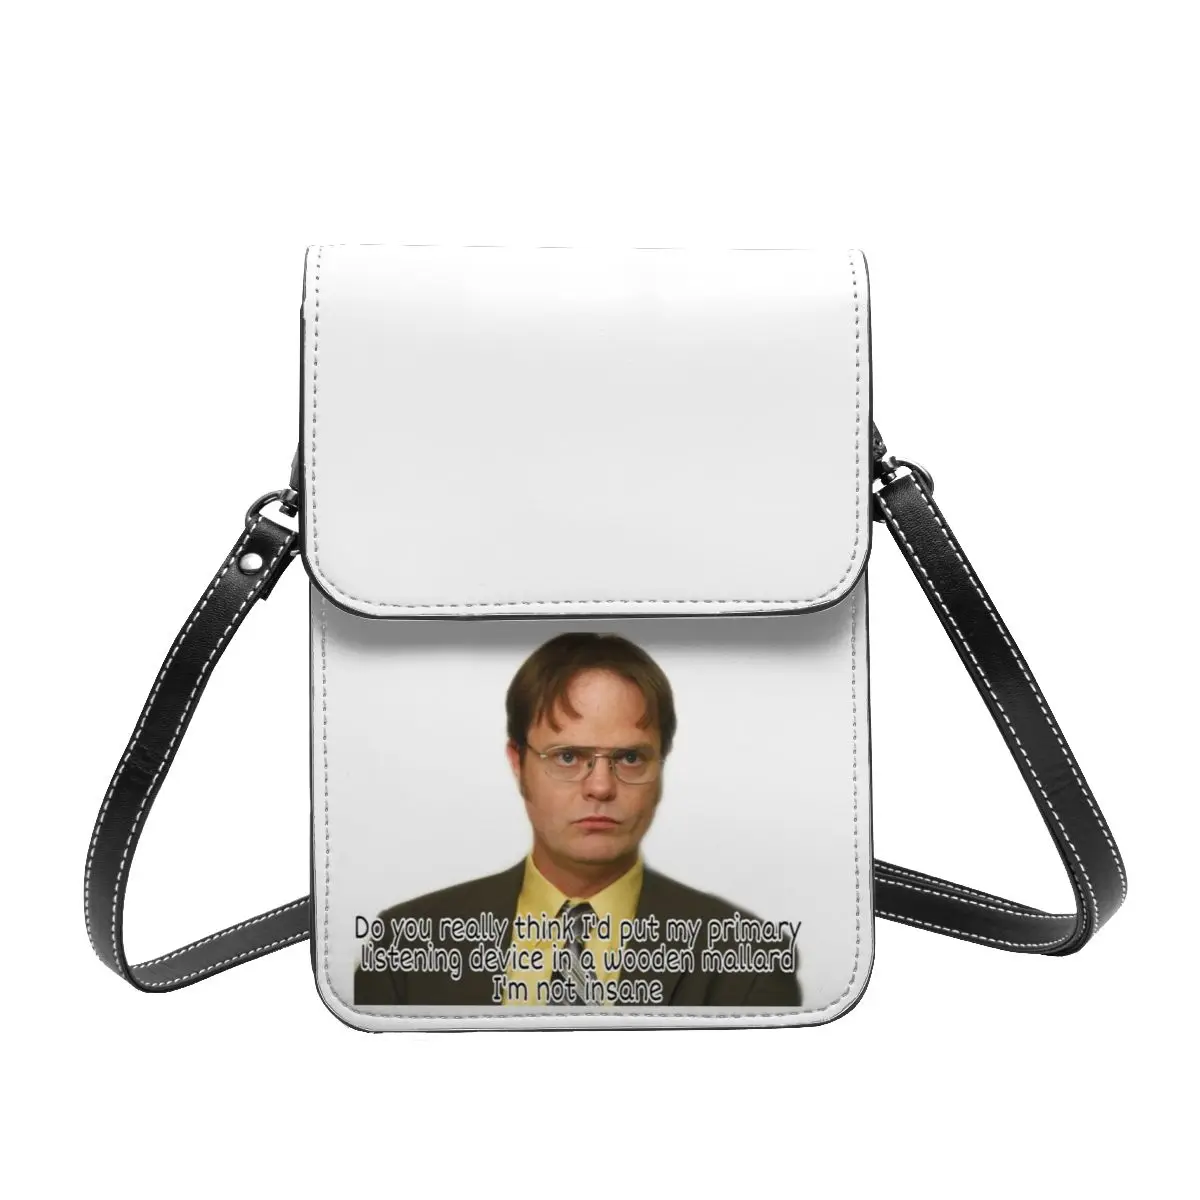 

Сумка на плечо Dwight с цитатами, деловая женская сумка для офиса с забавным Куртом, халпертом, стильные кожаные сумки в подарок